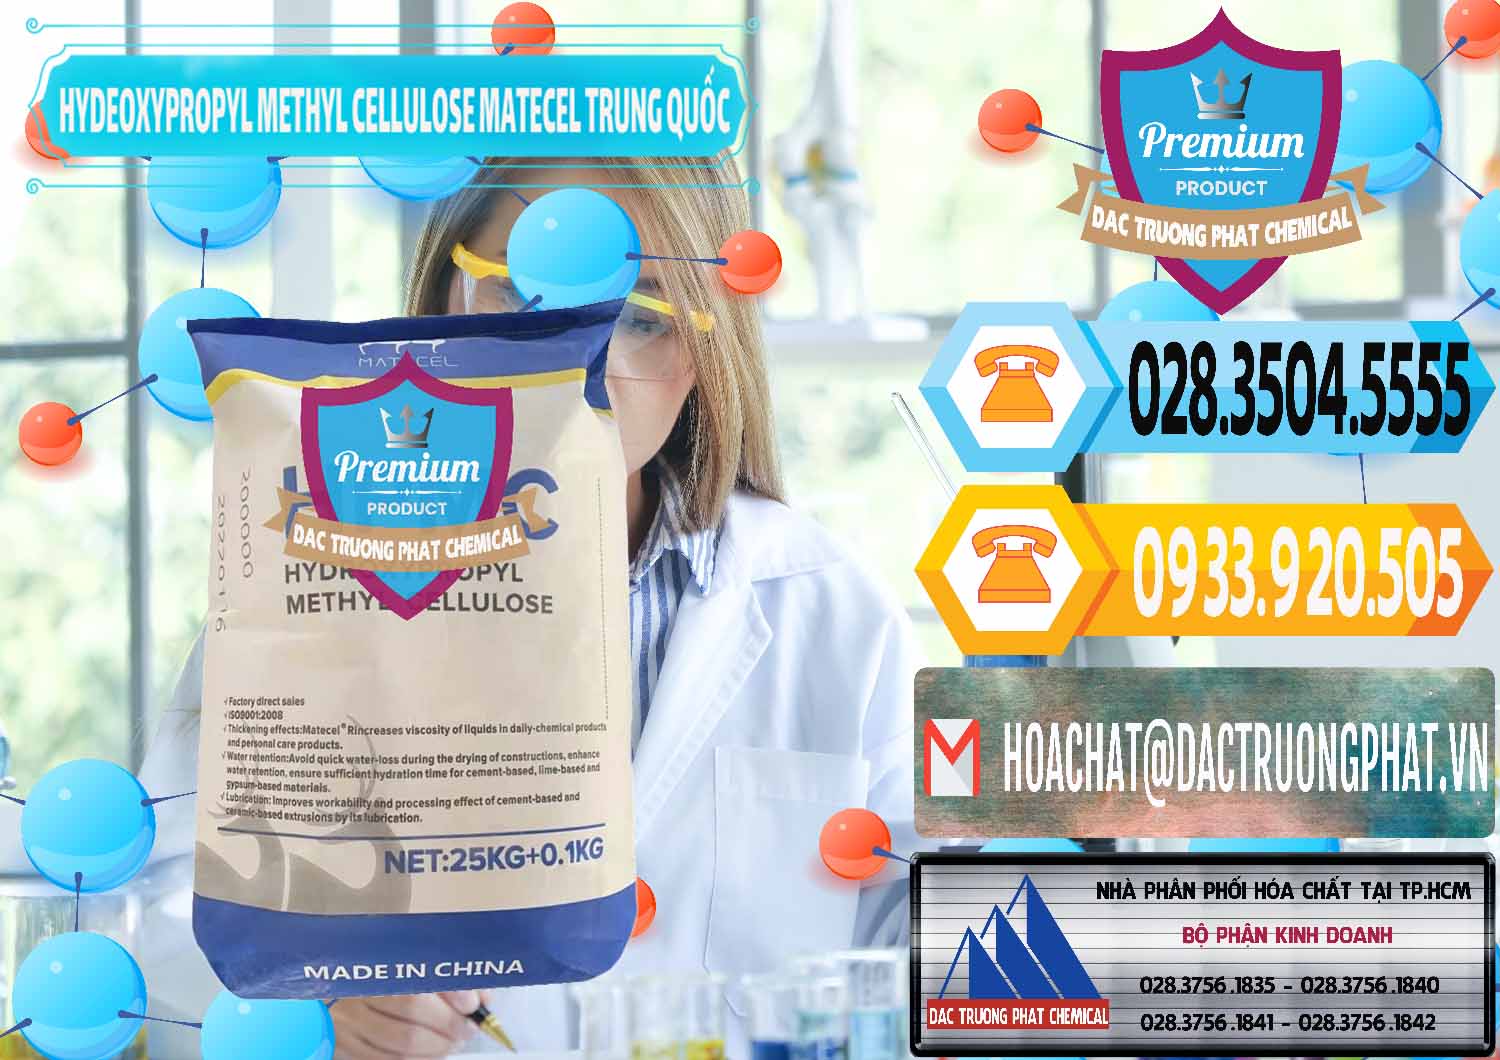 Bán & cung ứng Chất Tạo Đặc HPMC - Hydroxypropyl Methyl Cellulose Matecel Trung Quốc China - 0396 - Đơn vị kinh doanh _ phân phối hóa chất tại TP.HCM - hoachattayrua.net